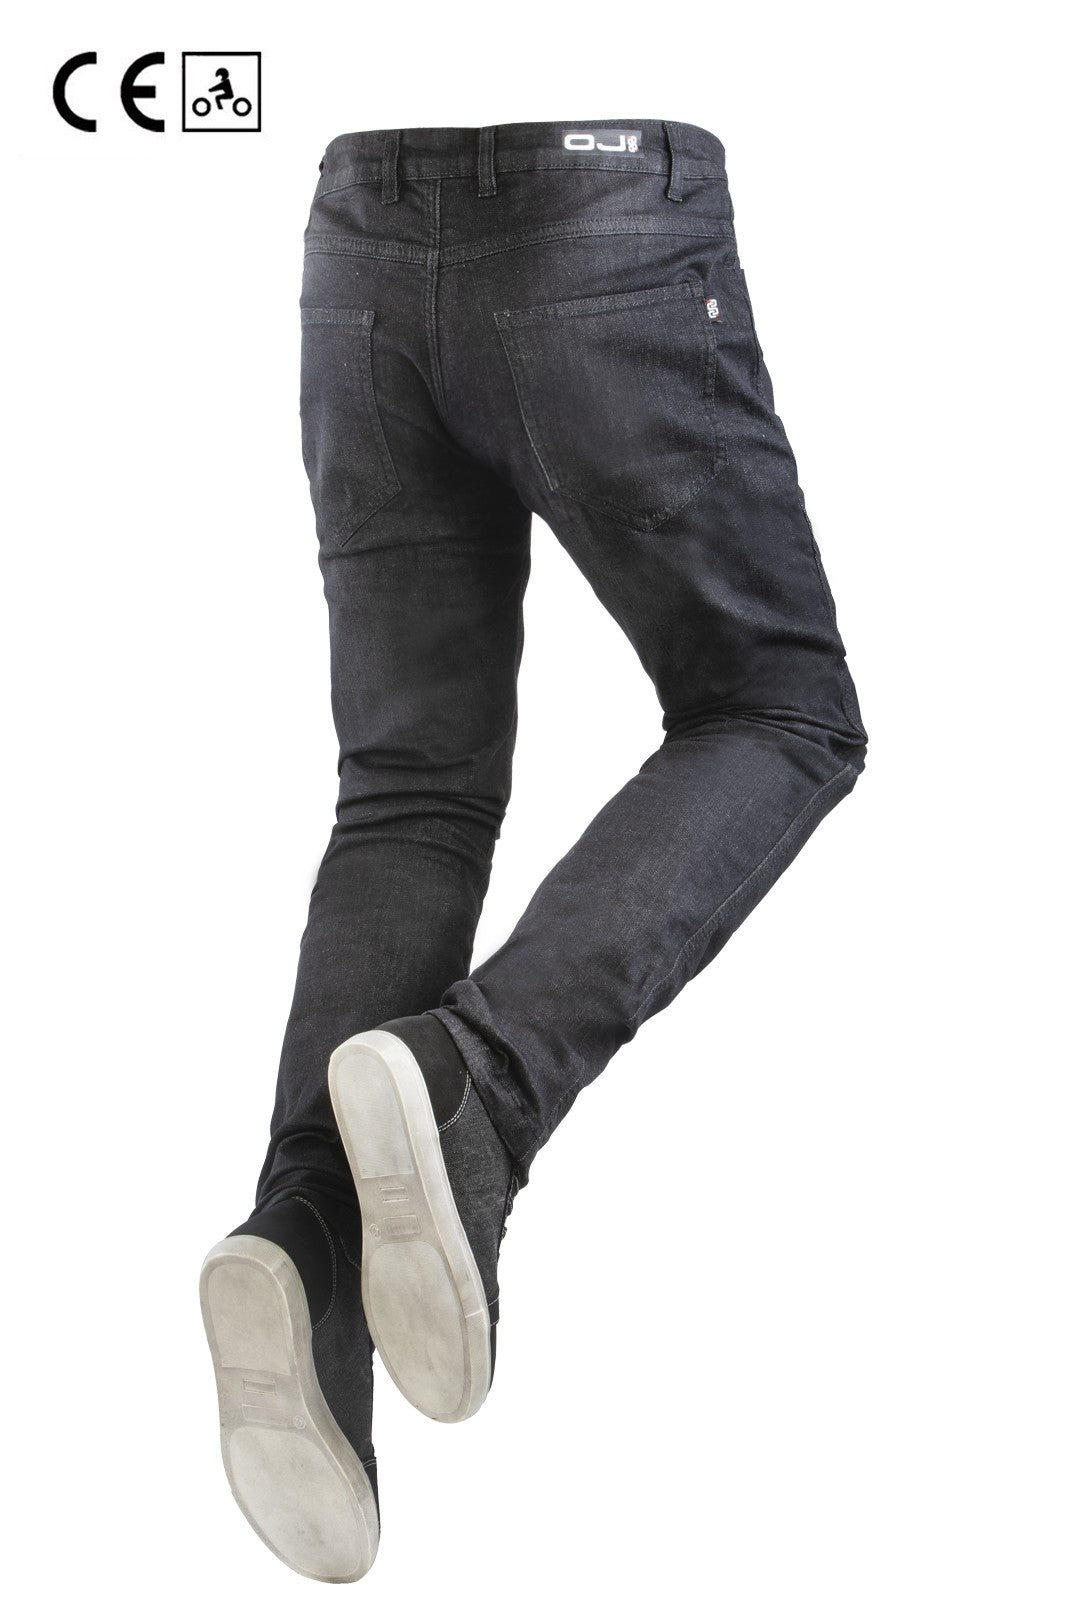 Jeans moto OJ DARKEN MAN per uomo elasticizzati con protezioni estraibili - OnTheRoad.shop - OJ